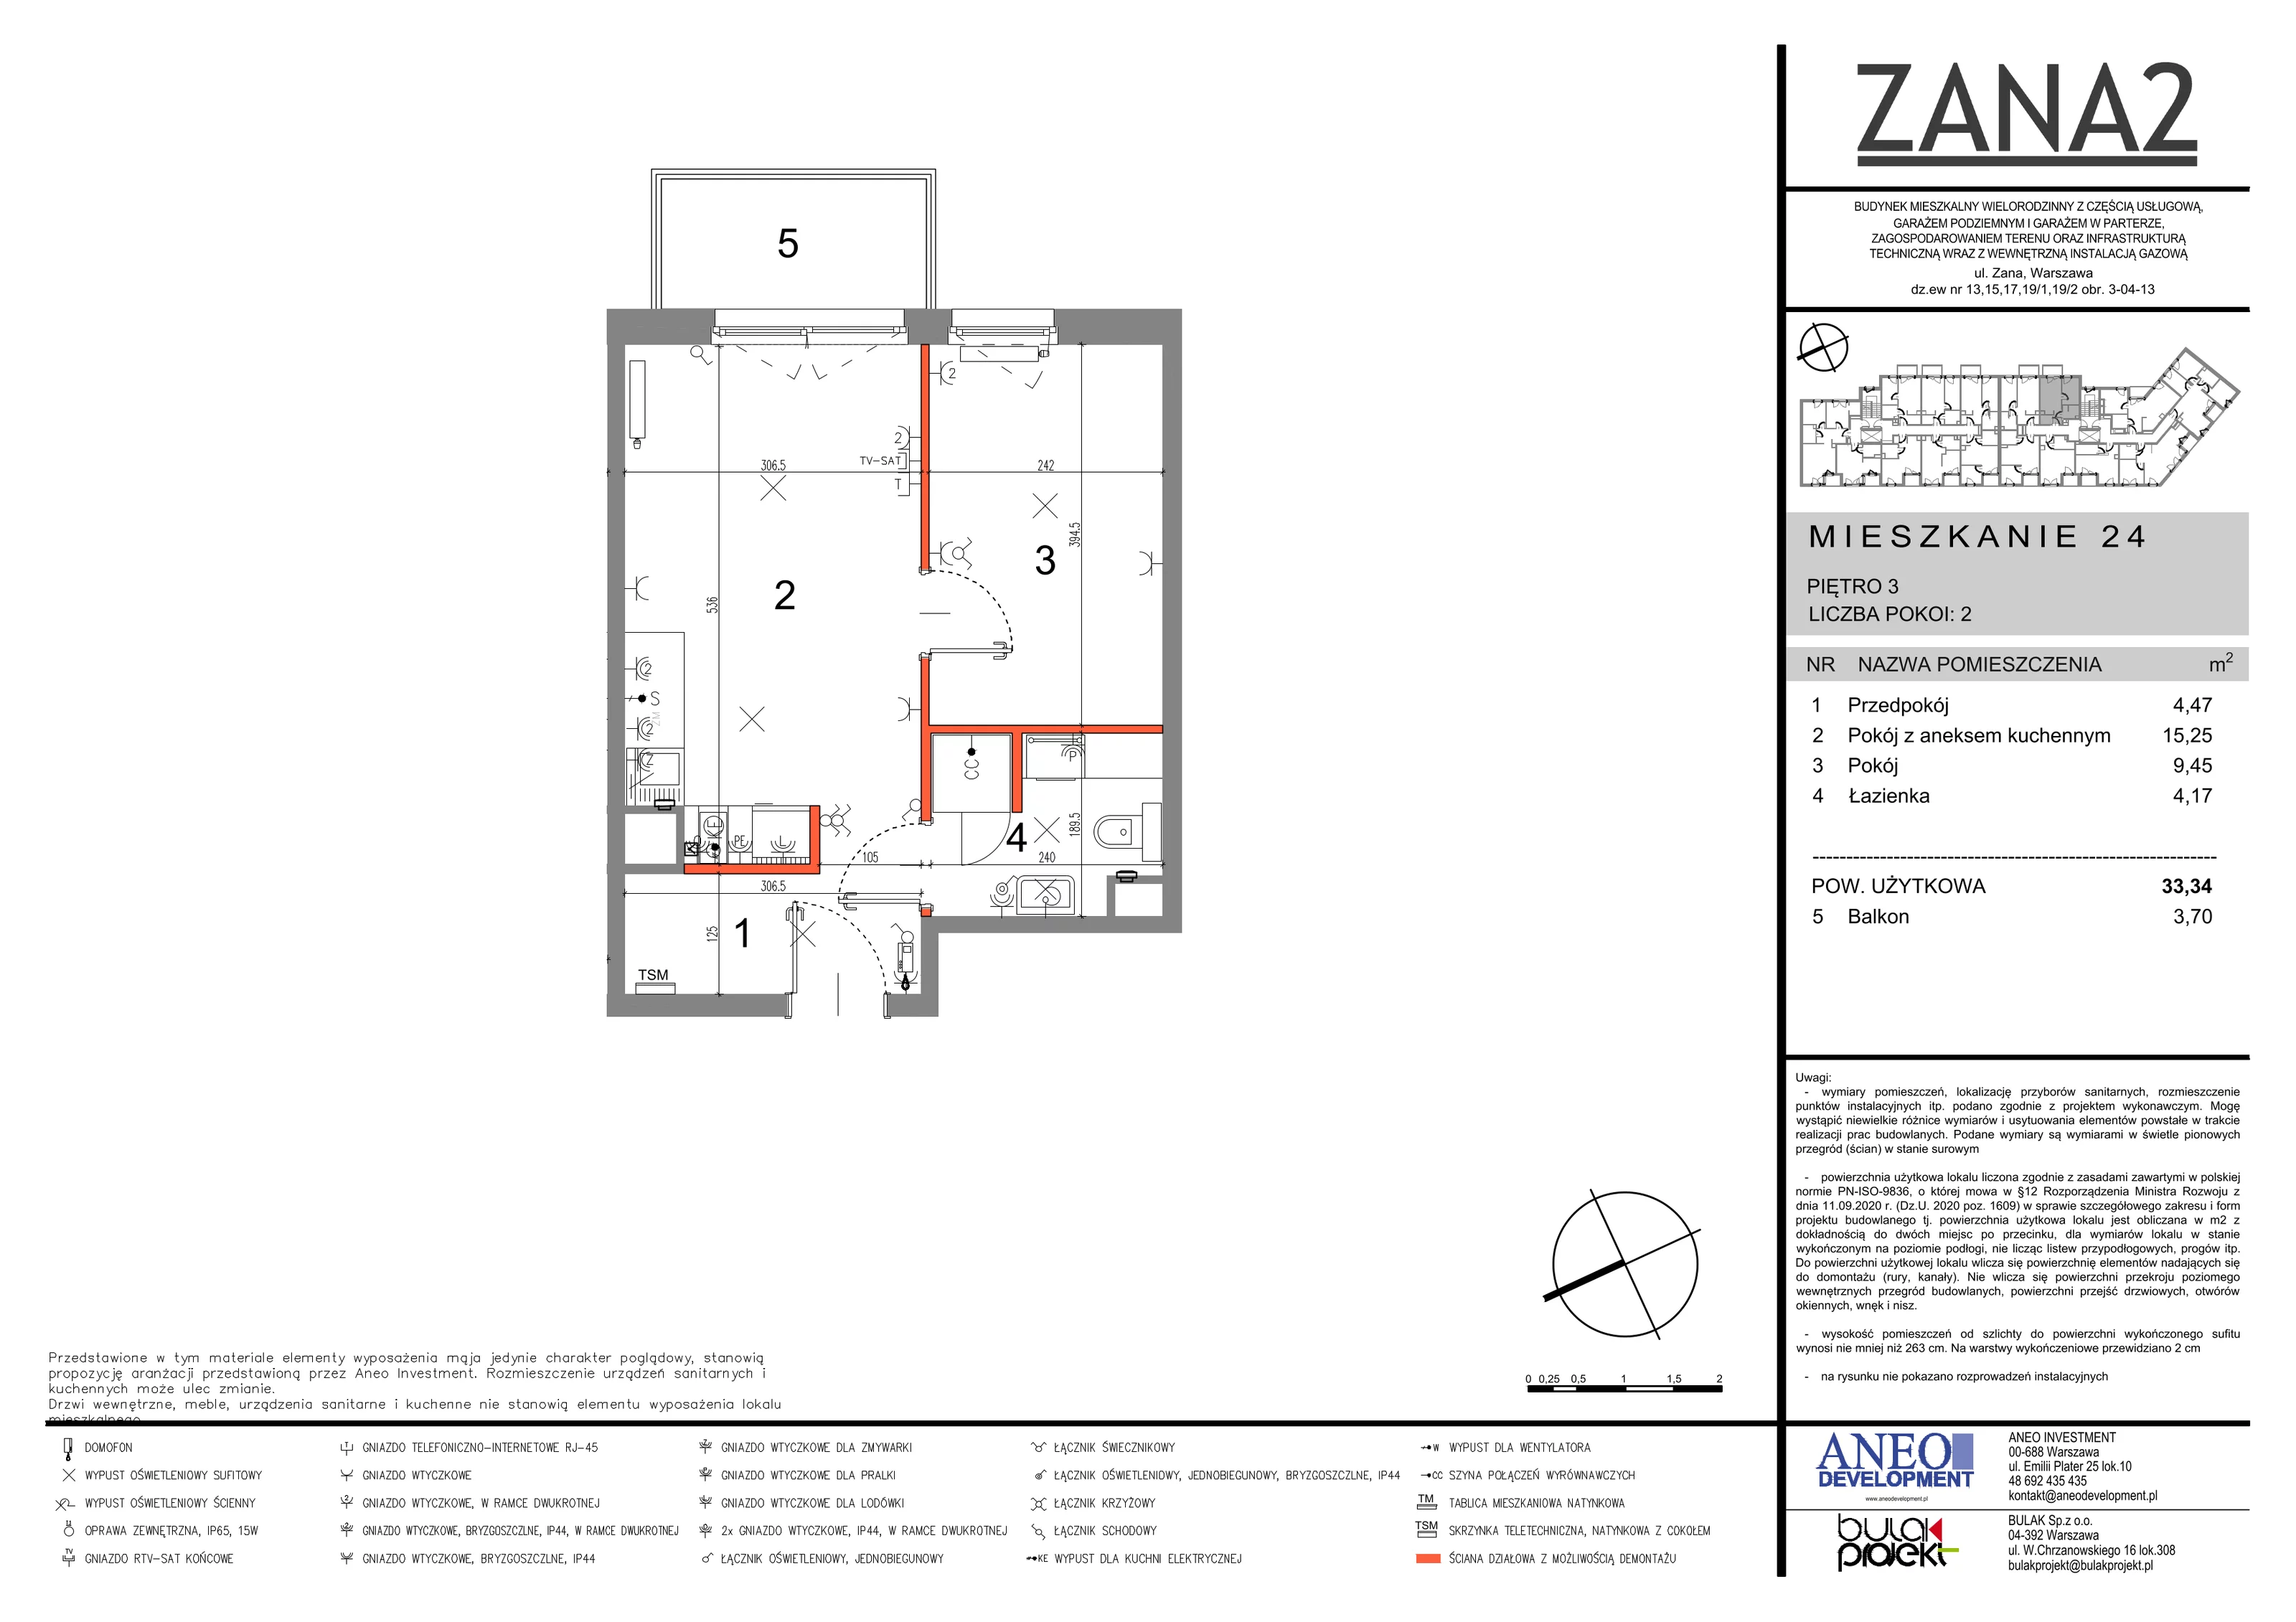 Mieszkanie 33,34 m², piętro 3, oferta nr 24, Zana 2, Warszawa, Praga Południe, Gocławek, ul. Tomasza Zana